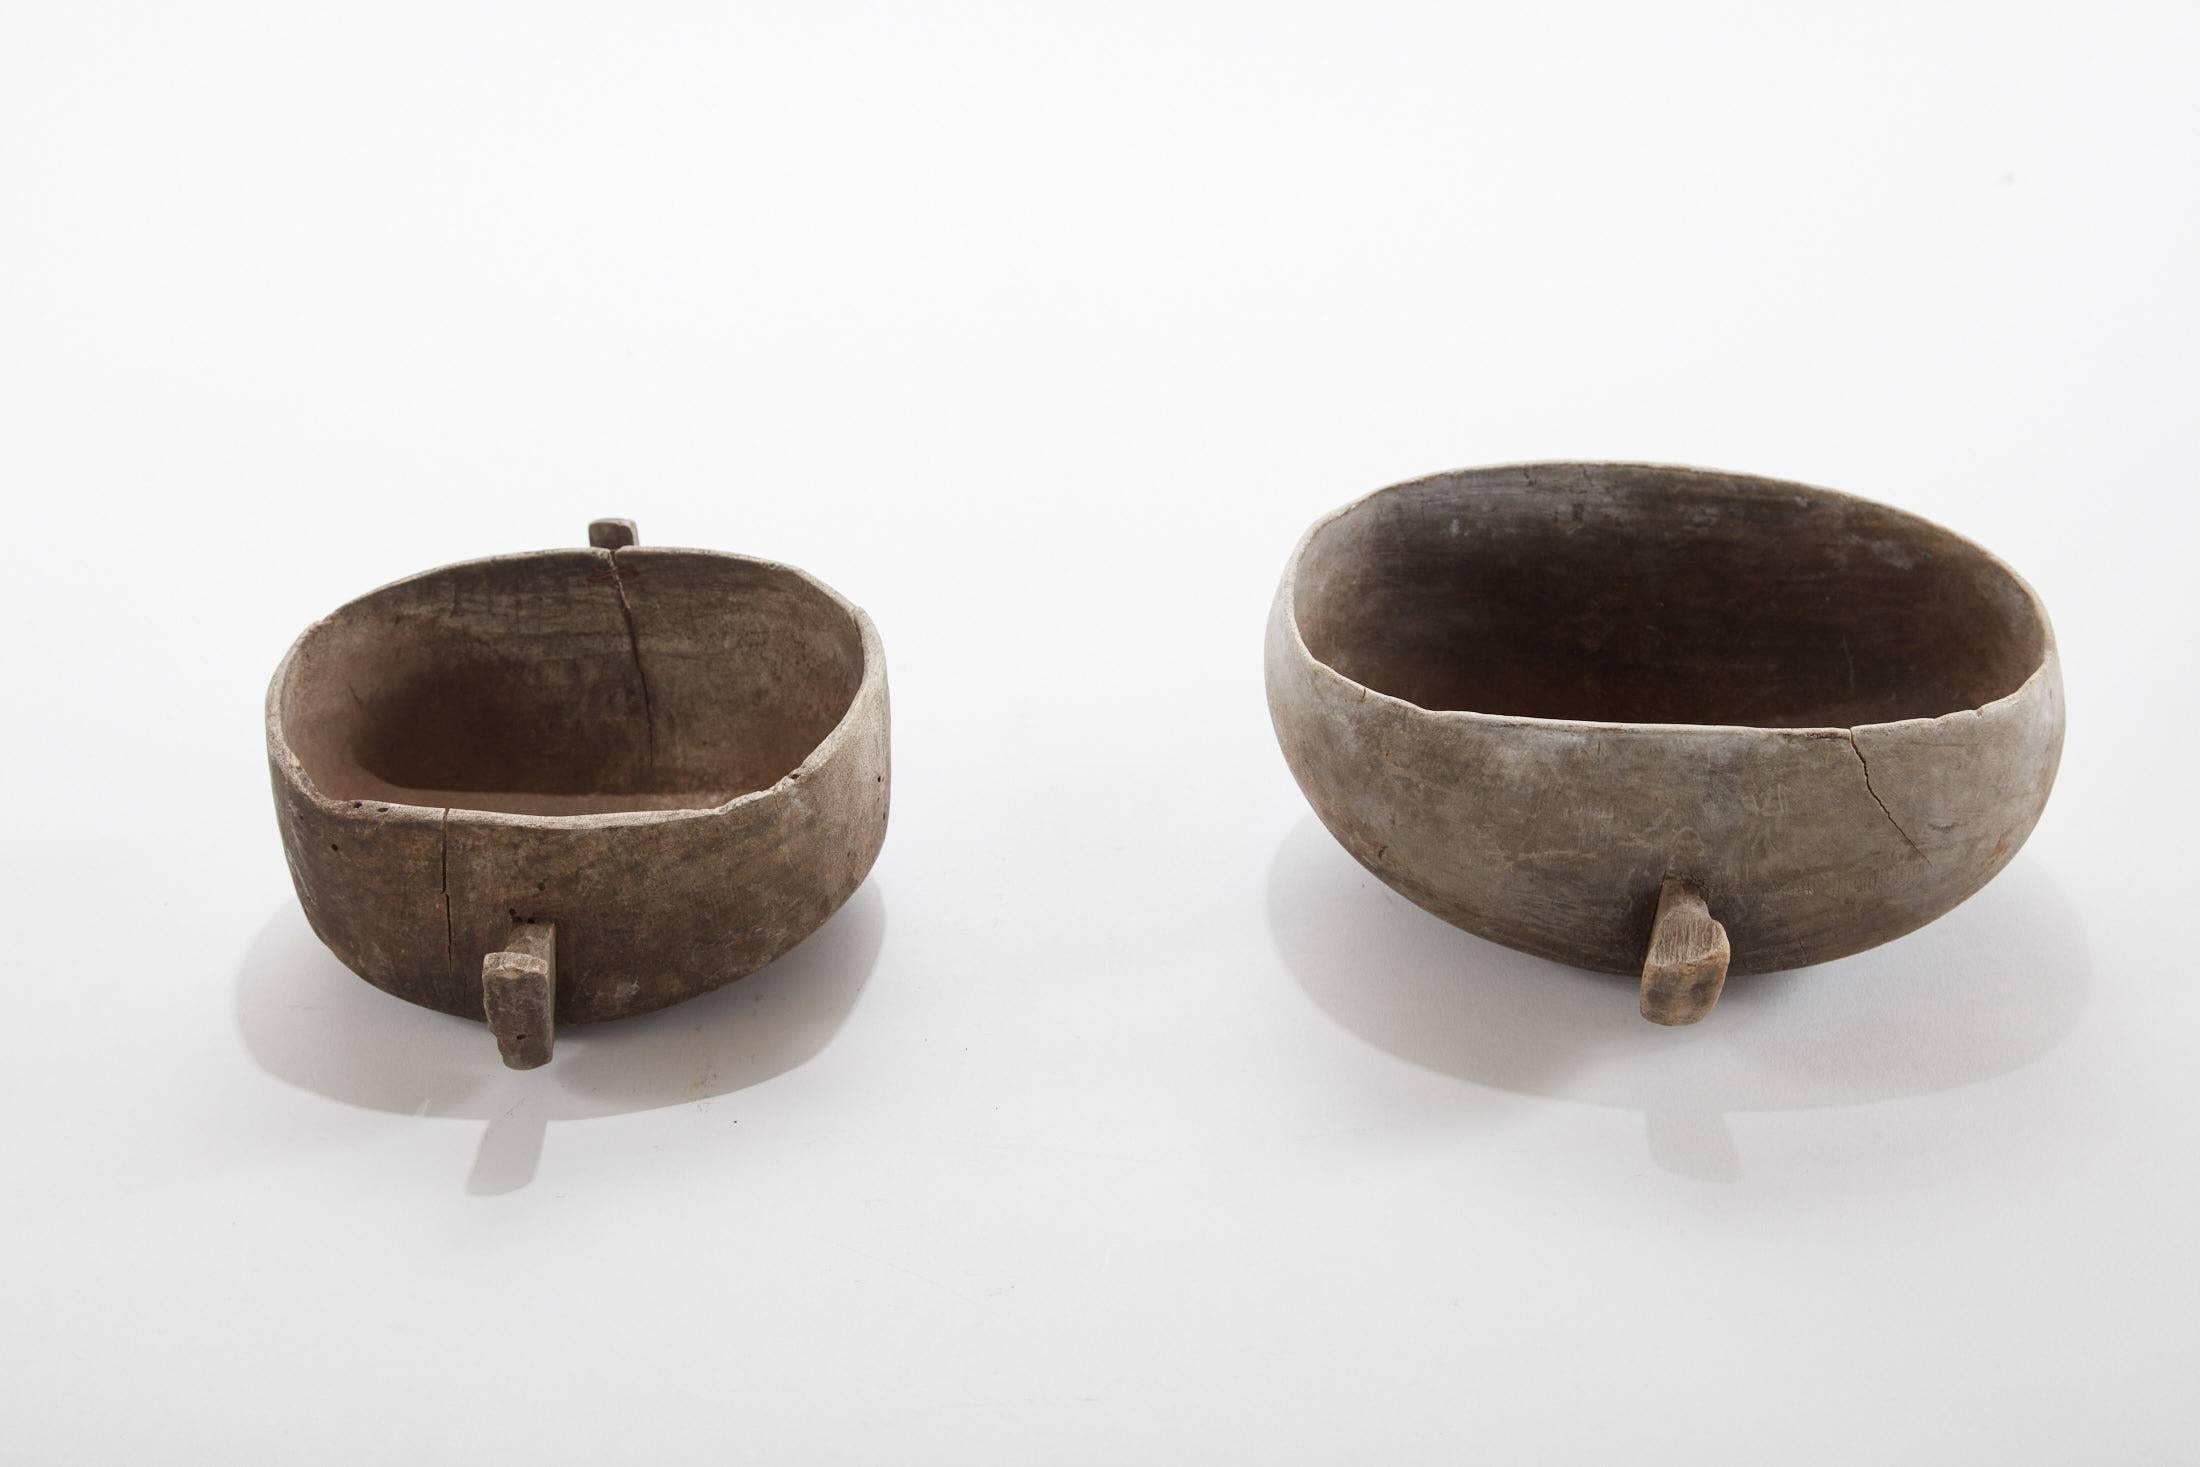 20e siècle : paire de bols à grain d'Afrique de l'Est avec poignées (ensemble de deux pièces).

De gauche à droite
A) 10,5